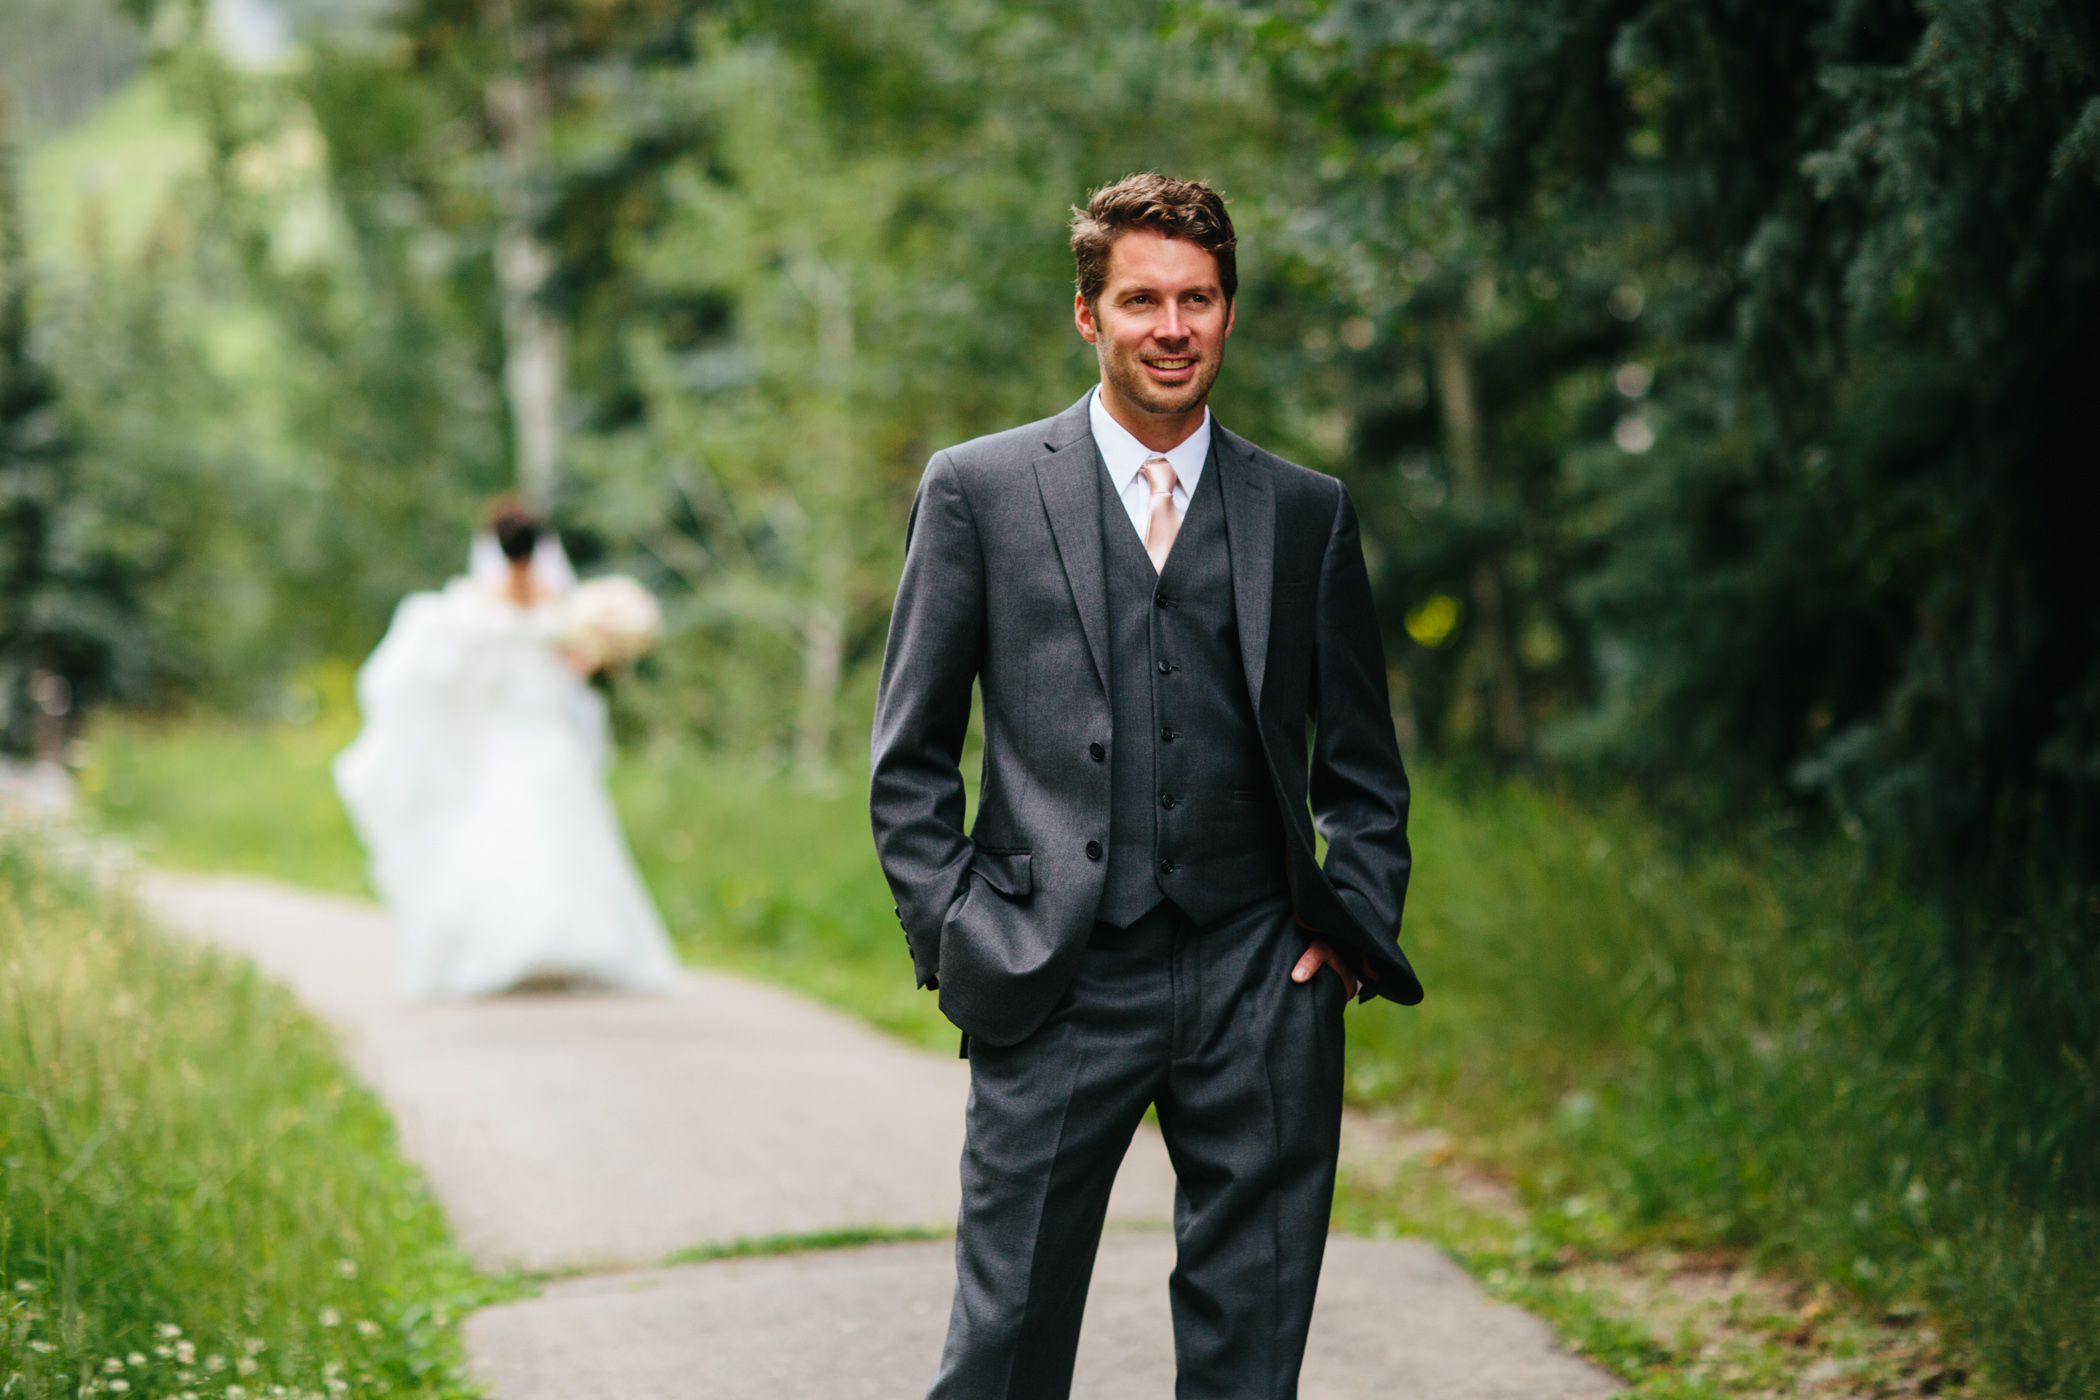 colorado mountain wedding photographer, colorado weddings, mountain wedding photographer, natural wedding photos